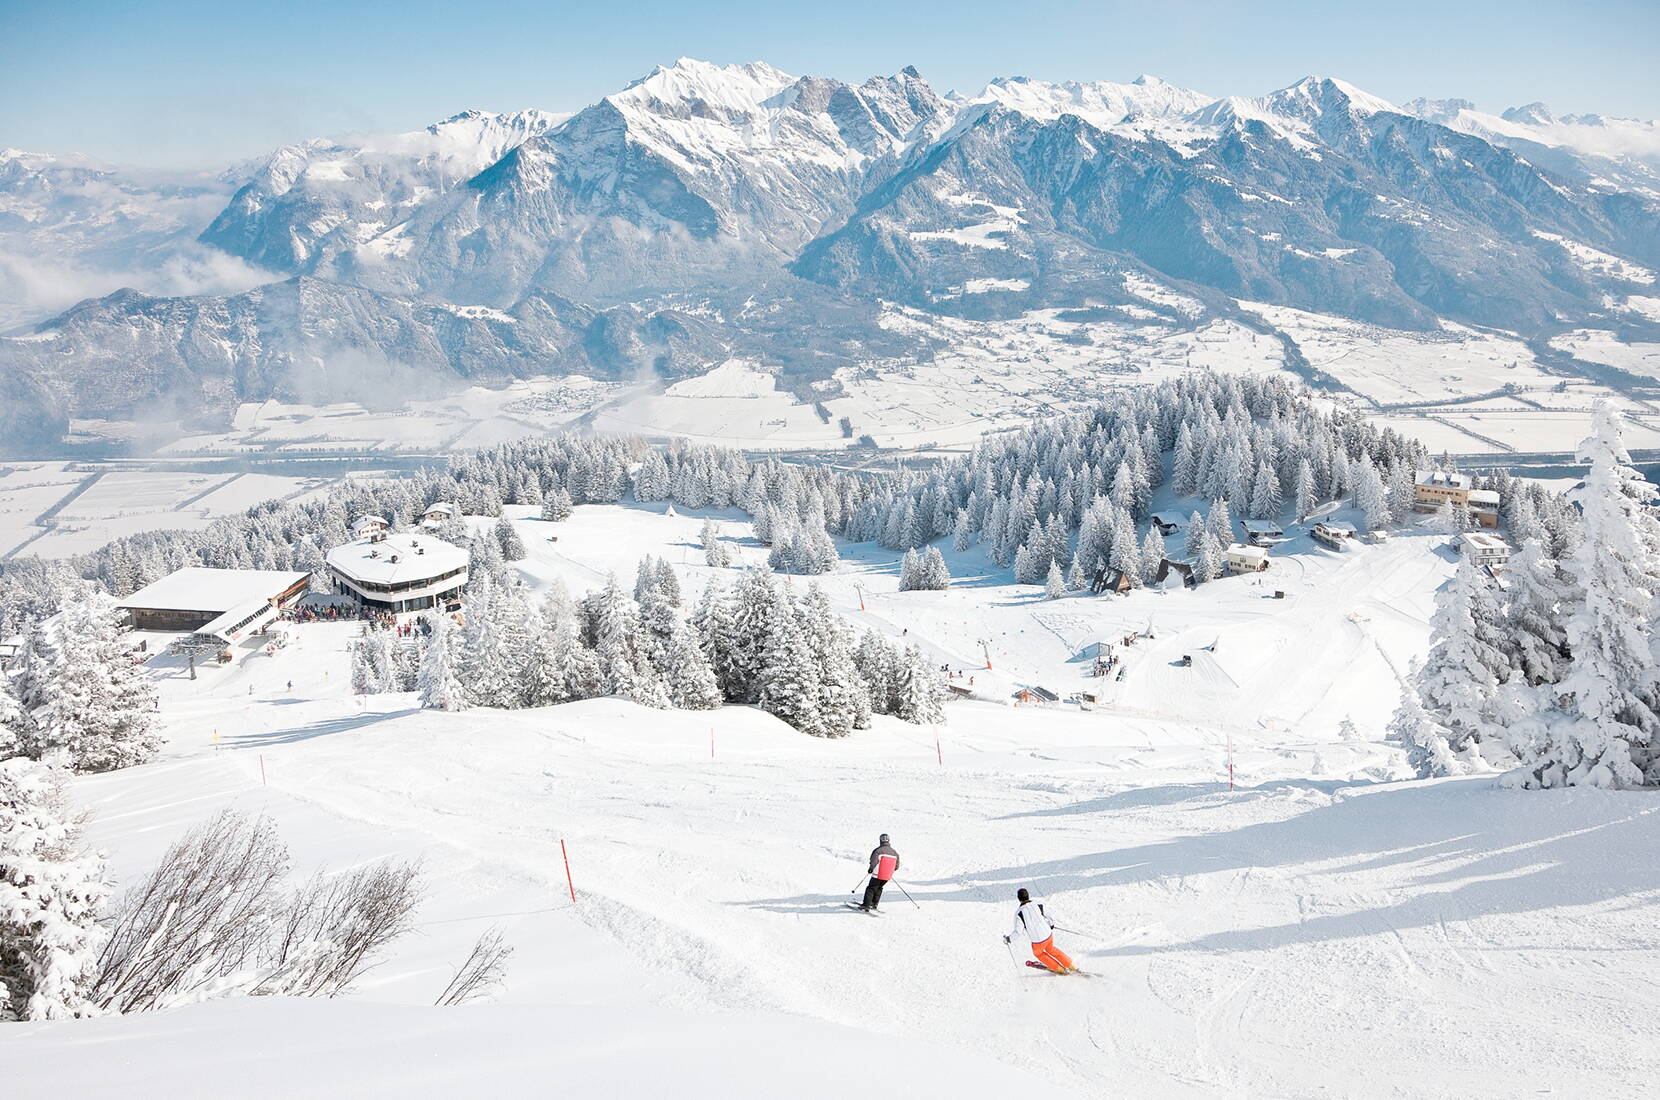 Familienausflug Wintersport Pizol. Rund um den Gipfel eröffnet sich eine einzigartige Naturlandschaft mit atemberaubender Panoramasicht über die Alpen der Ostschweiz und des Vorarlbergs bis über den Bodensee.